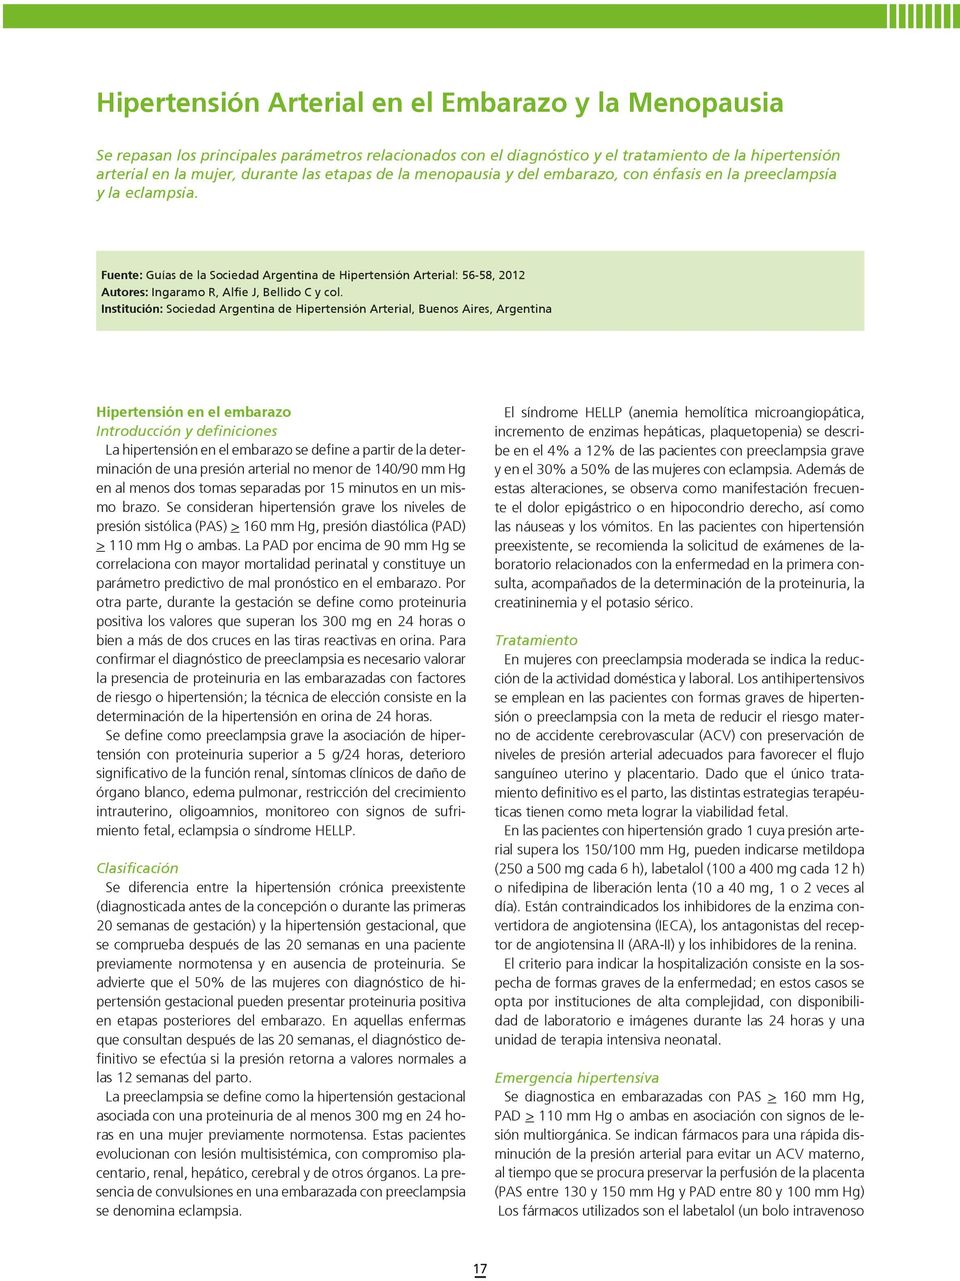 Fuente: Guías de la Sociedad Argentina de Hipertensión Arterial: 56-58, 2012 Autores: Ingaramo R, Alfie J, Bellido C y col.